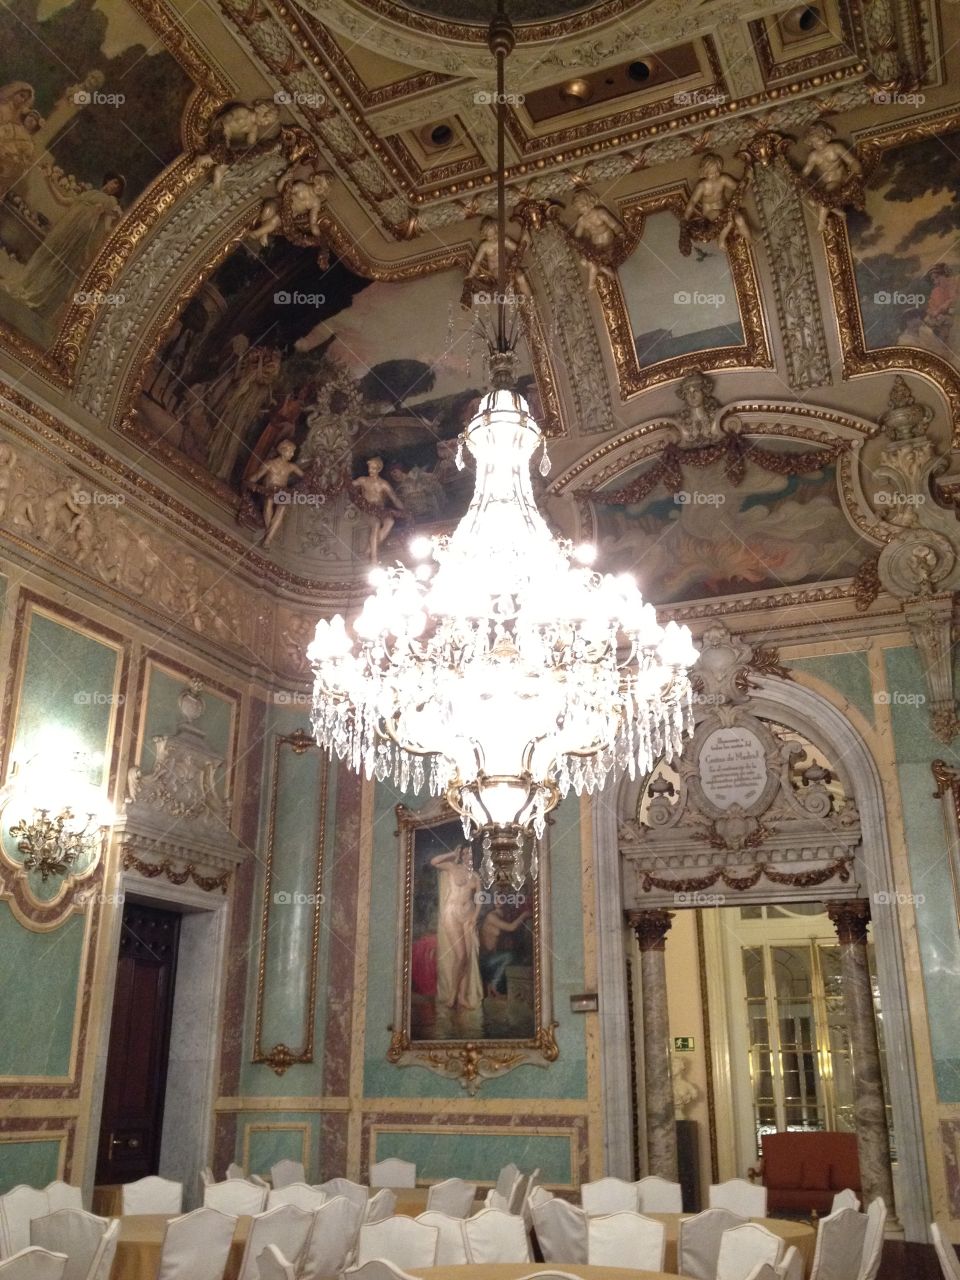 Chandelier. Madrid Palacio baroque interior event chandelier formal elegant 